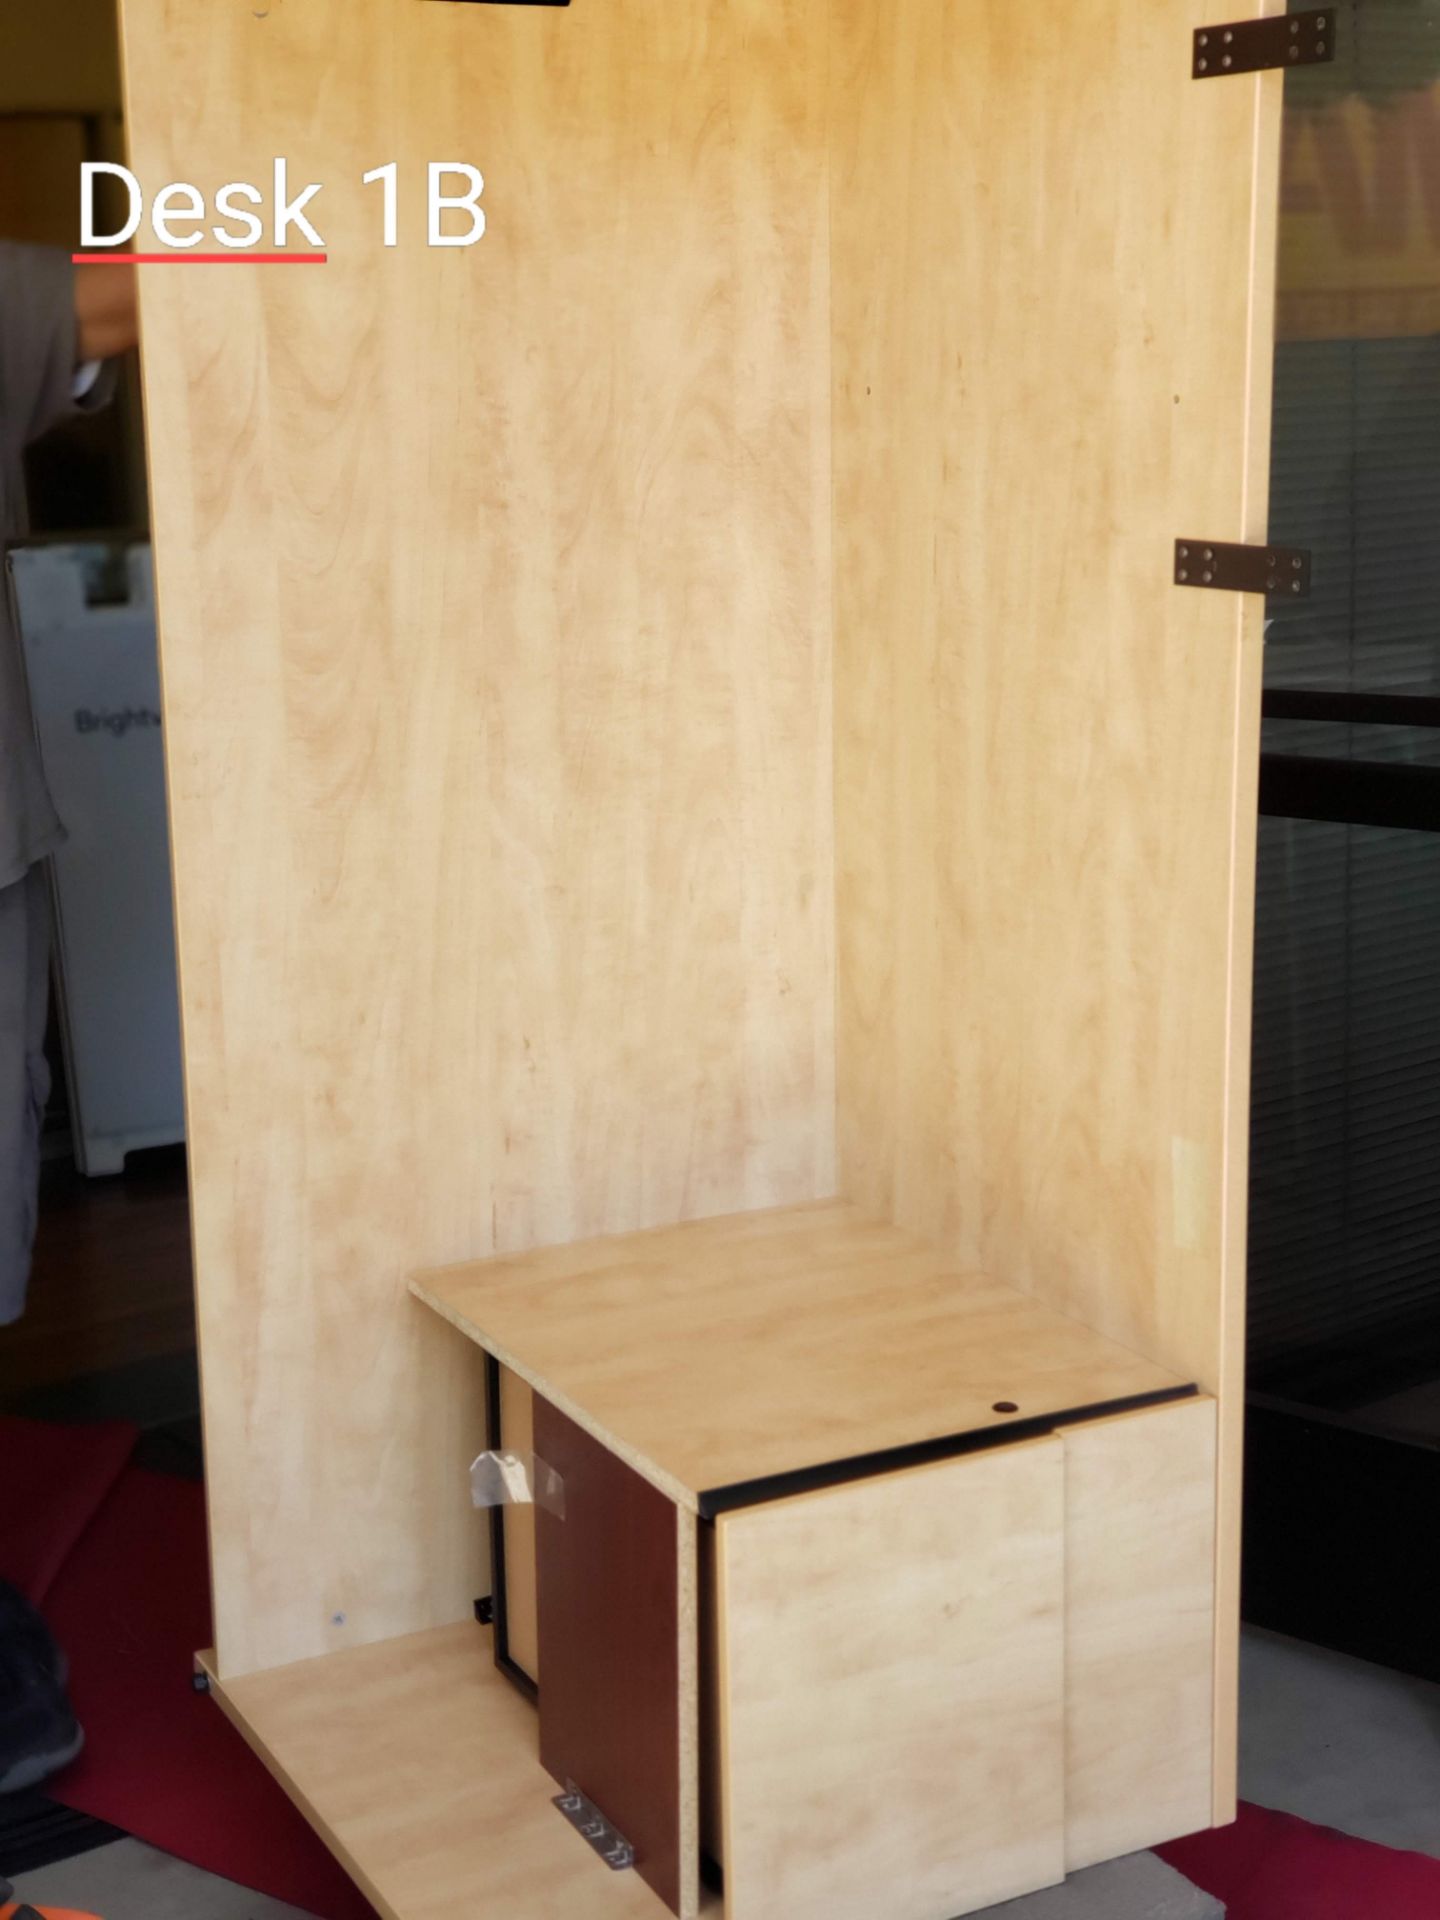 Oak 6ft Desk W/Hutch - Image 2 of 4